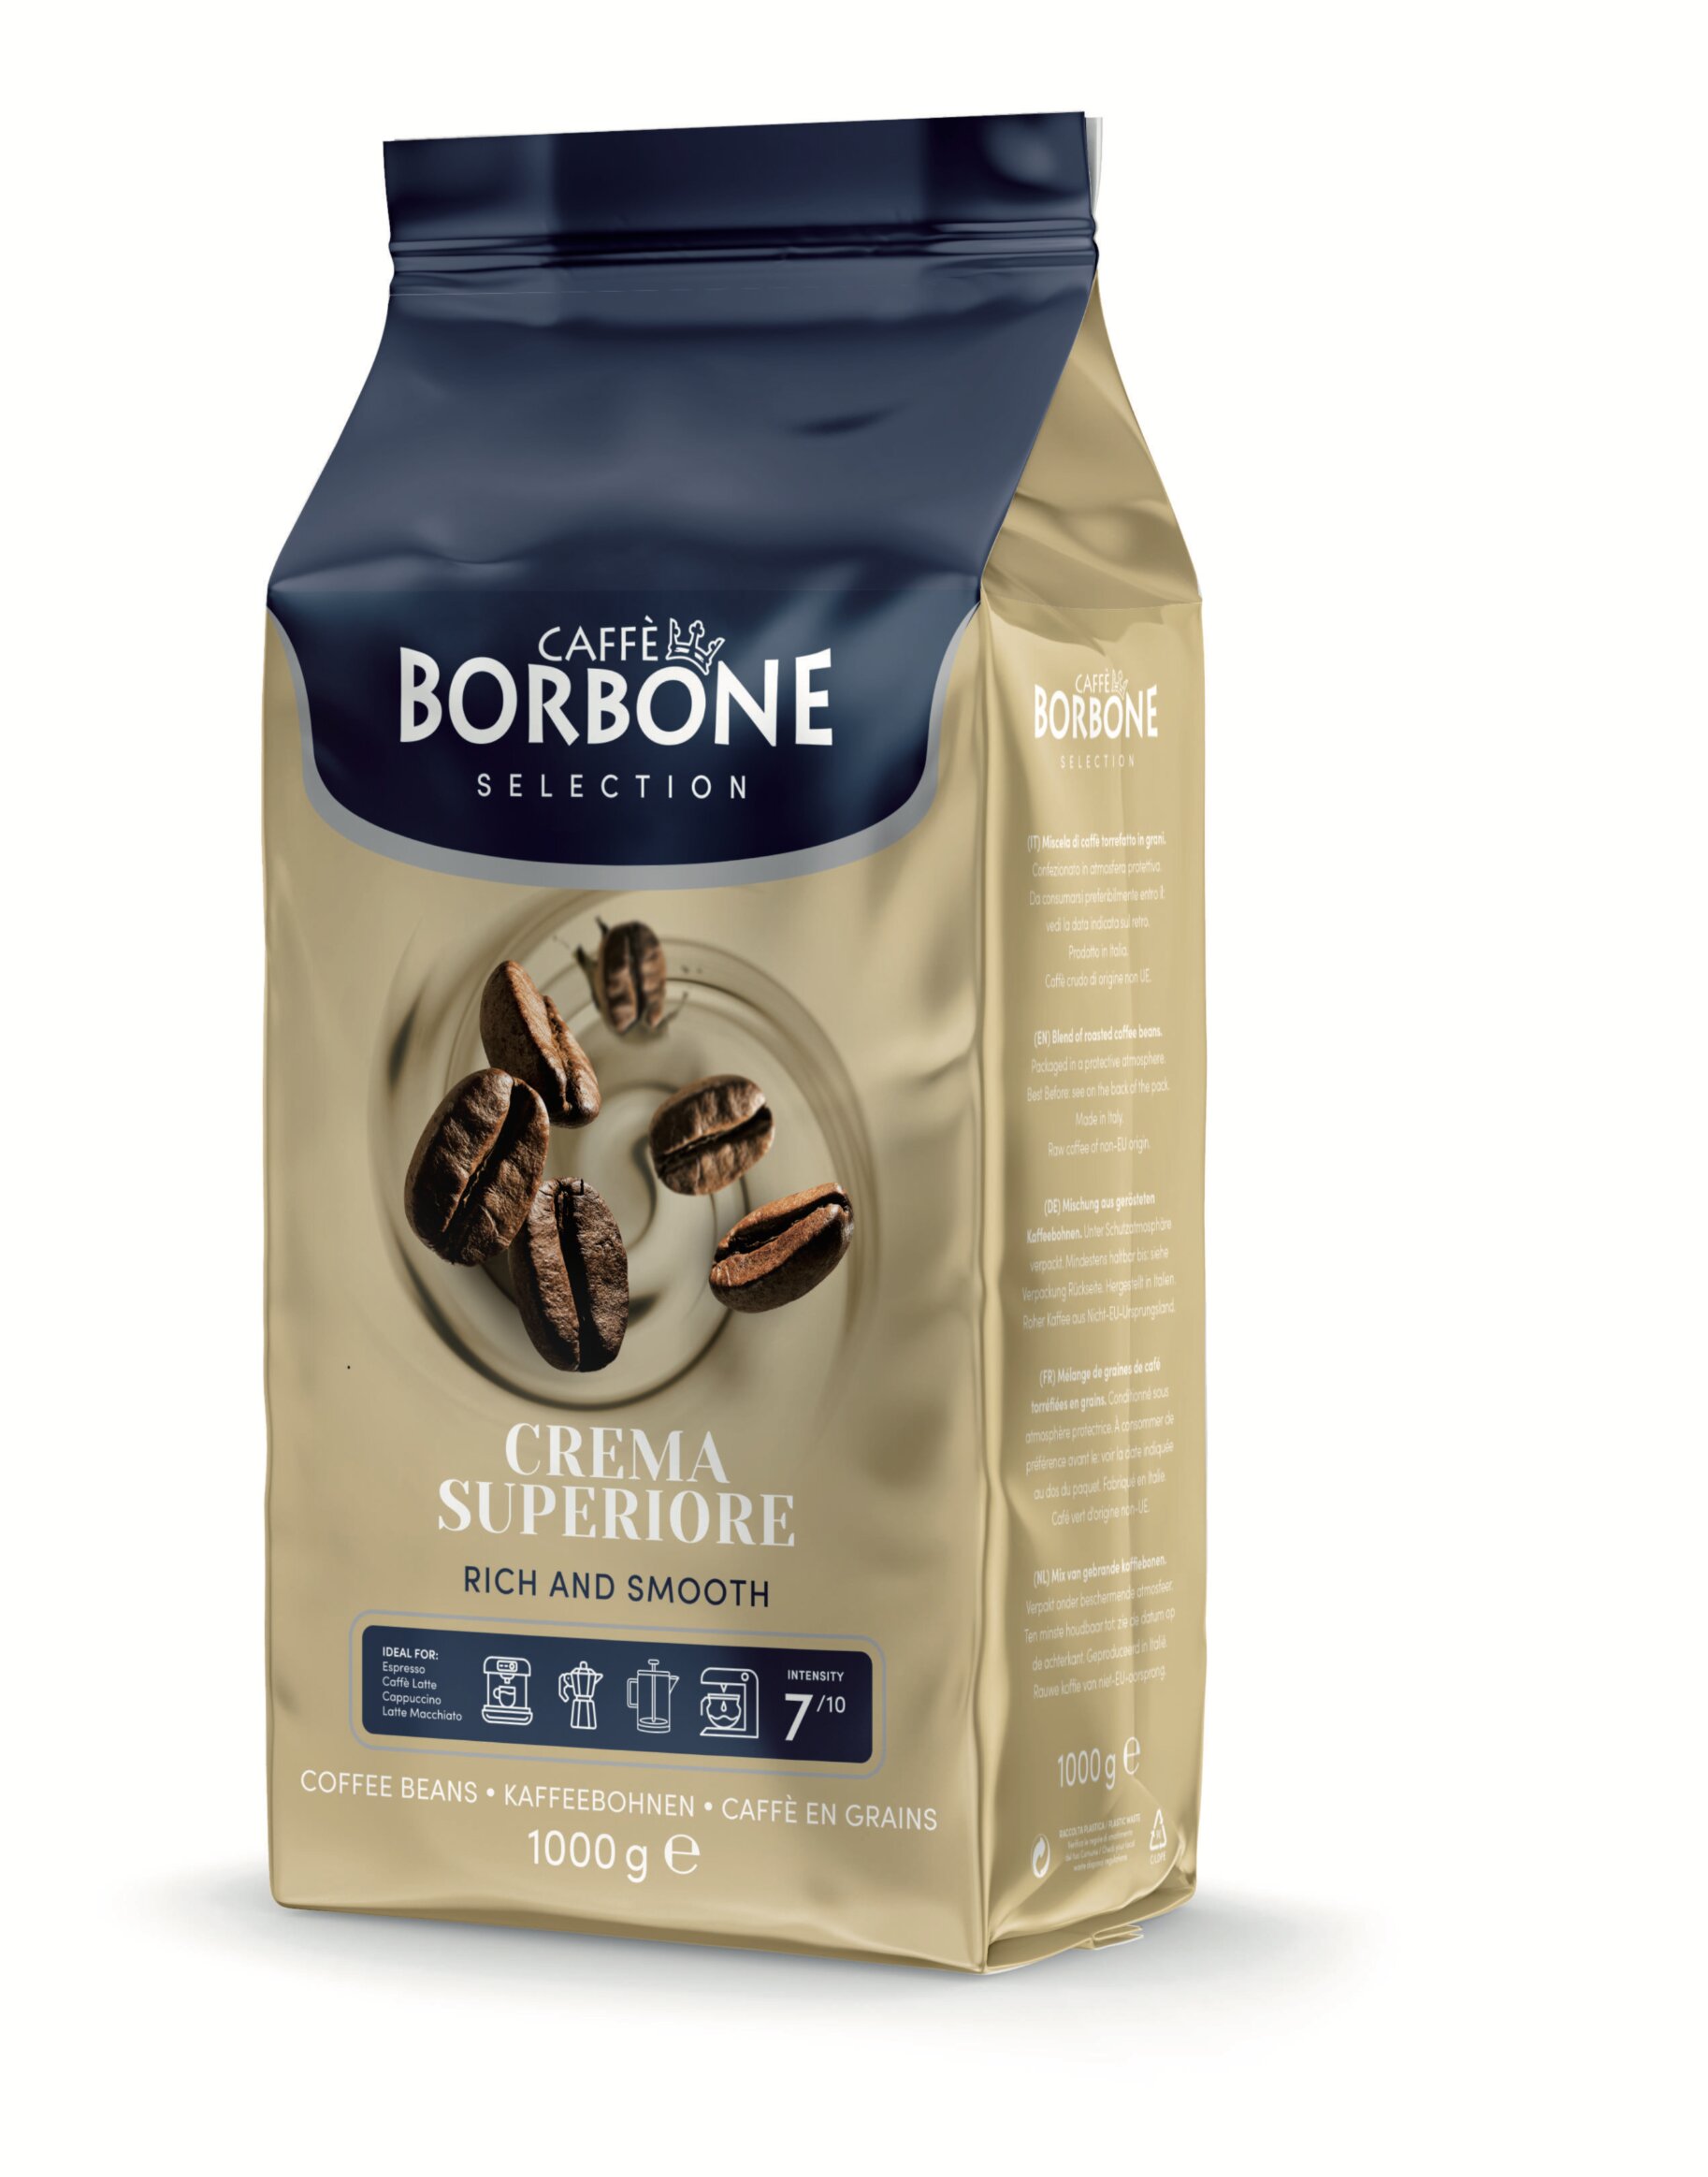 Crema Superiore (Caffè Borbone) ab 14,00 EUR bei Crifalu Kaffee günstig online kaufen